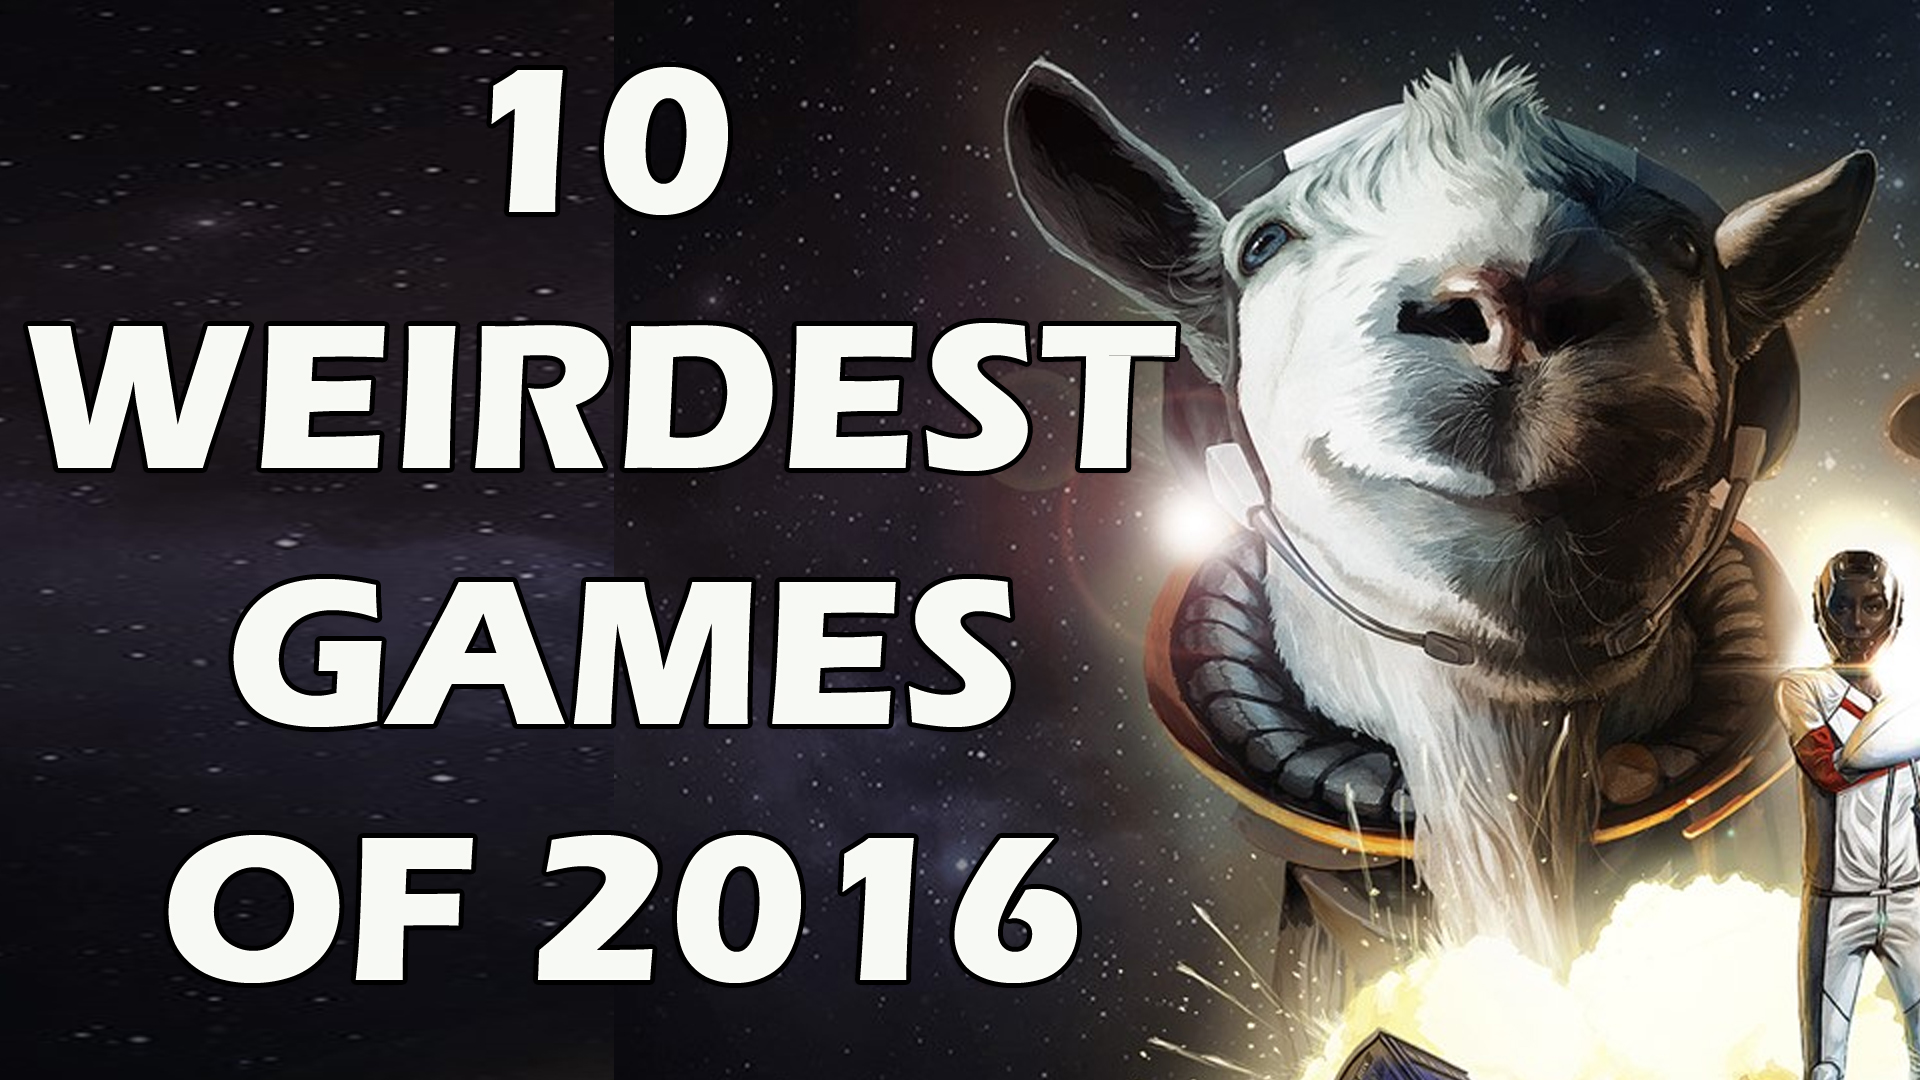 10 Weirdest Games of 2016